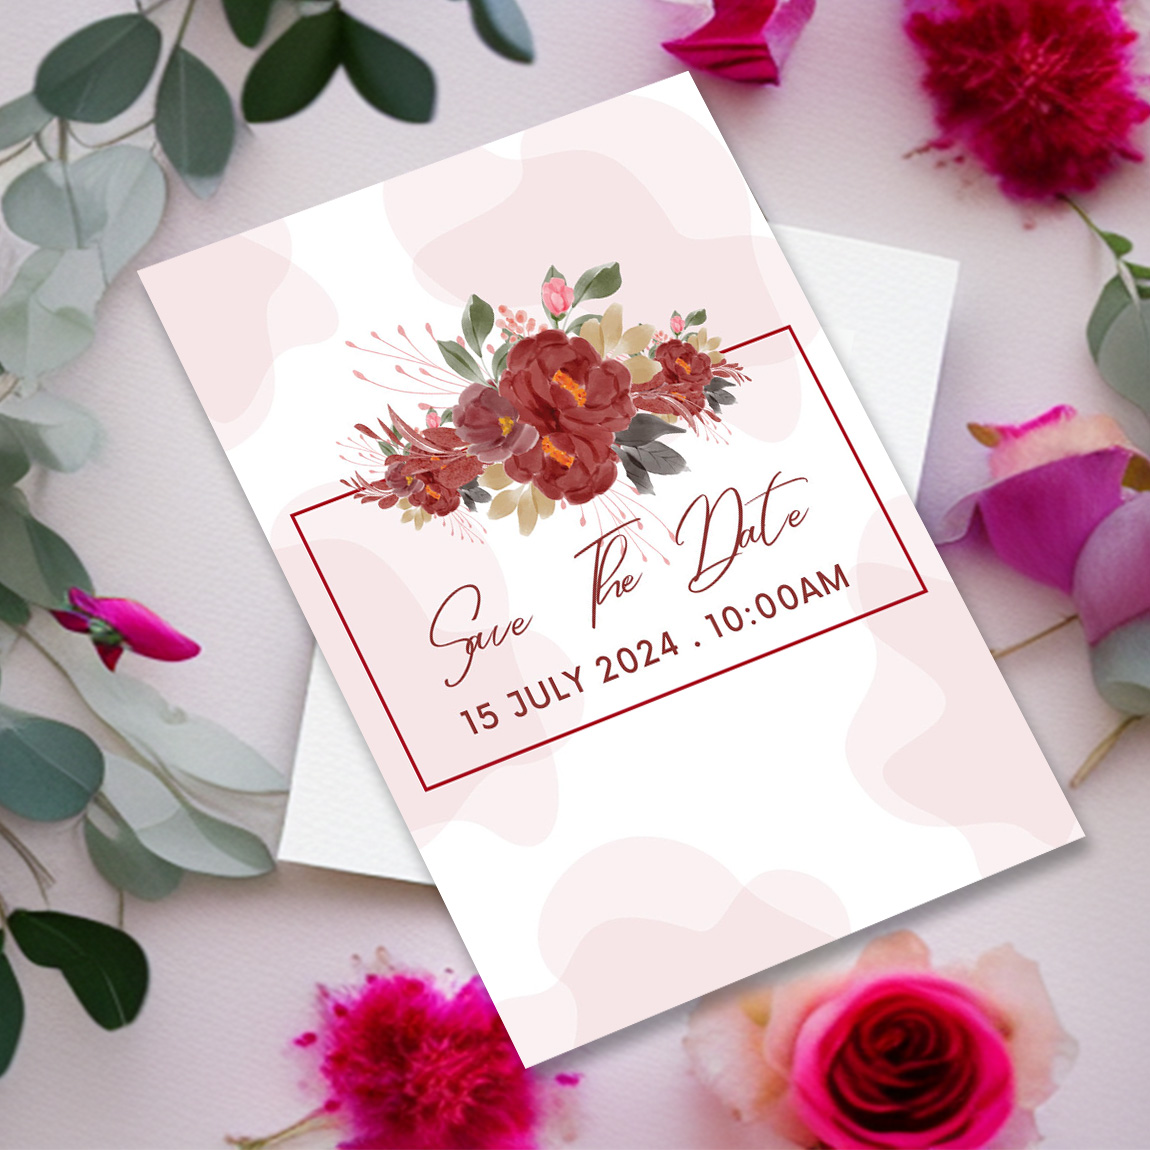 Elegant Wedding Floral Card Design cover image.